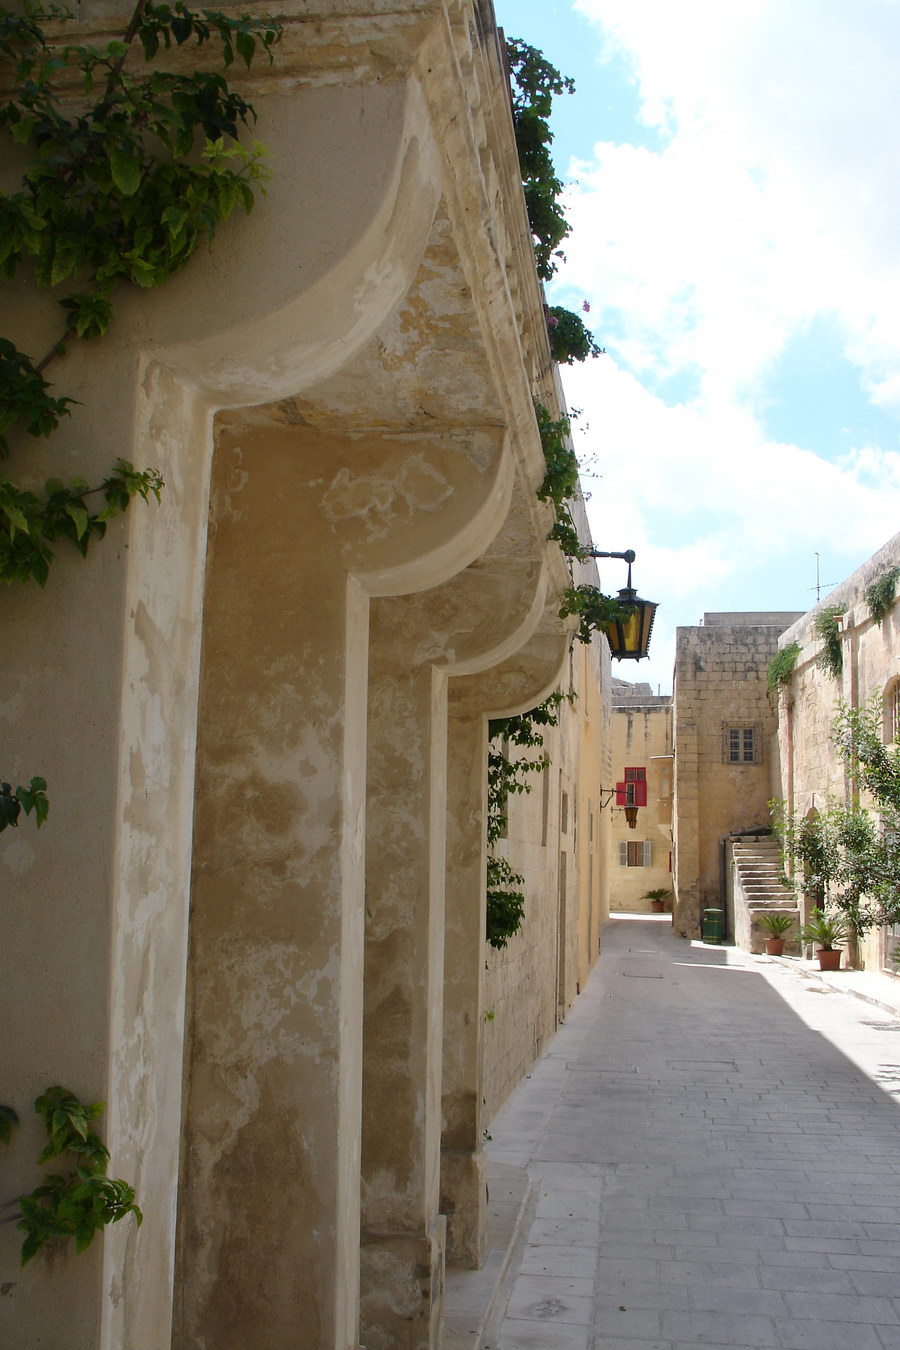 Malta, Mdina street views